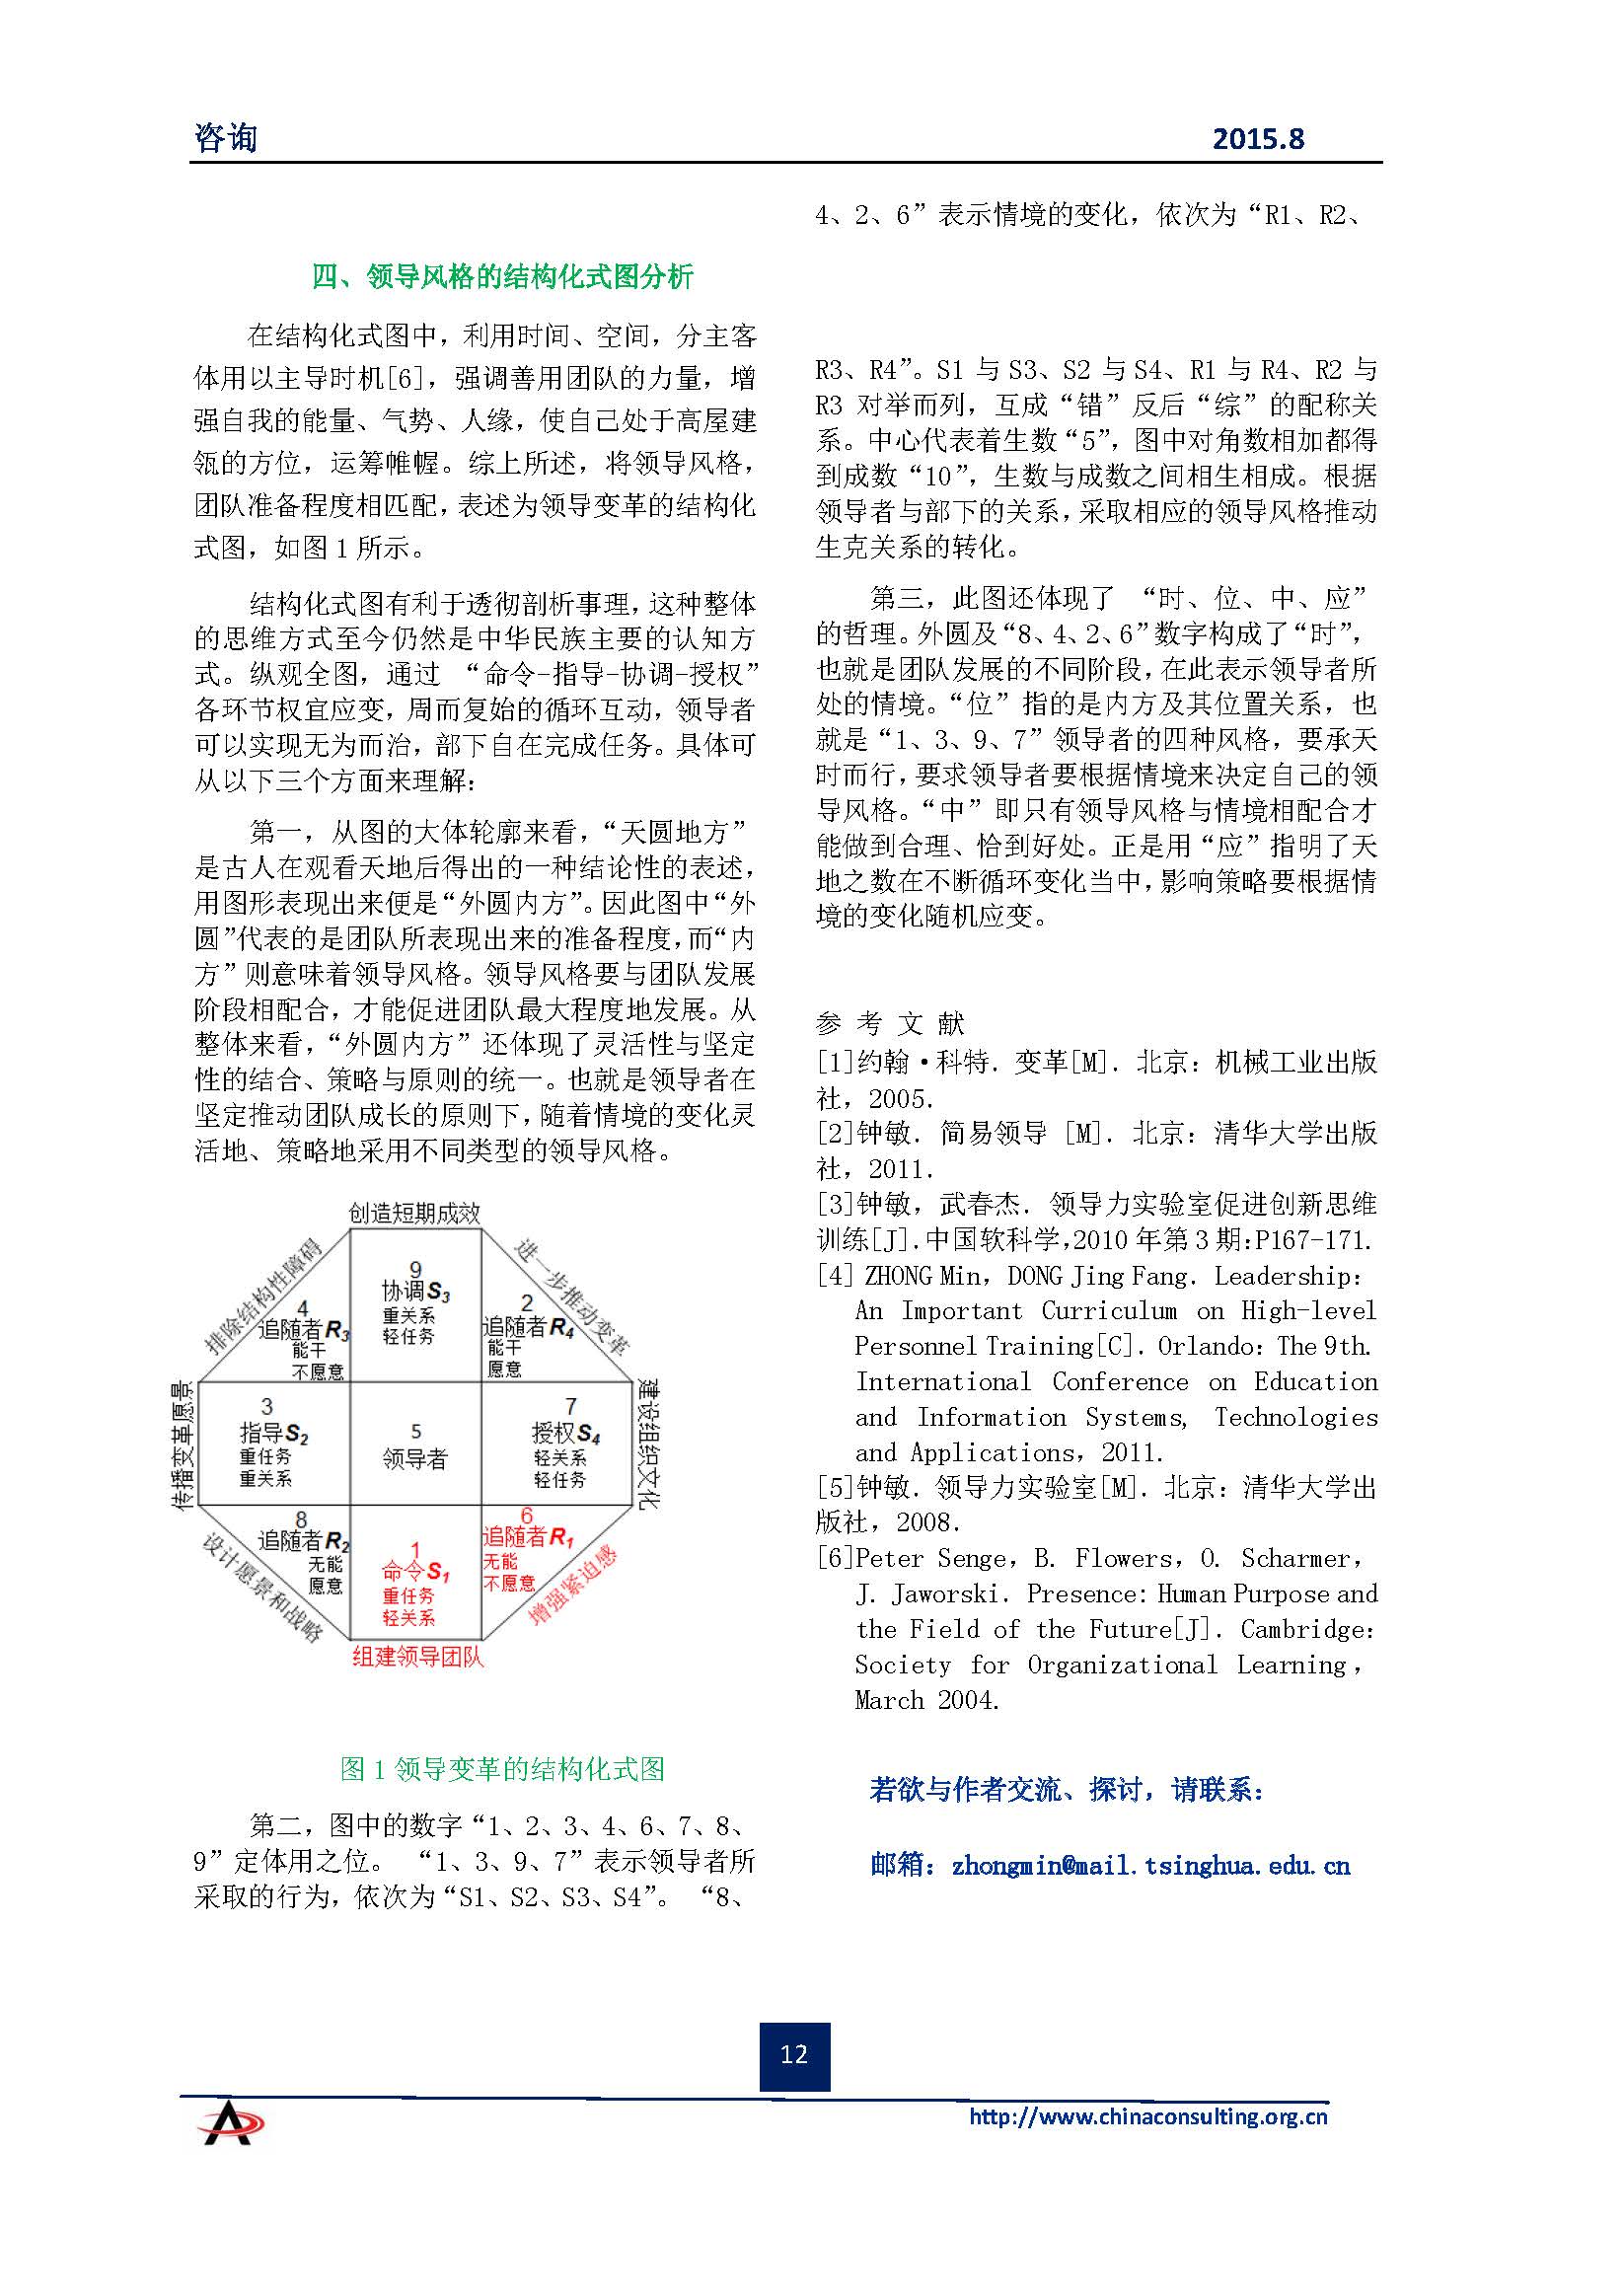 中国科技咨询协会会刊（第四十期）初稿_页面_14.jpg